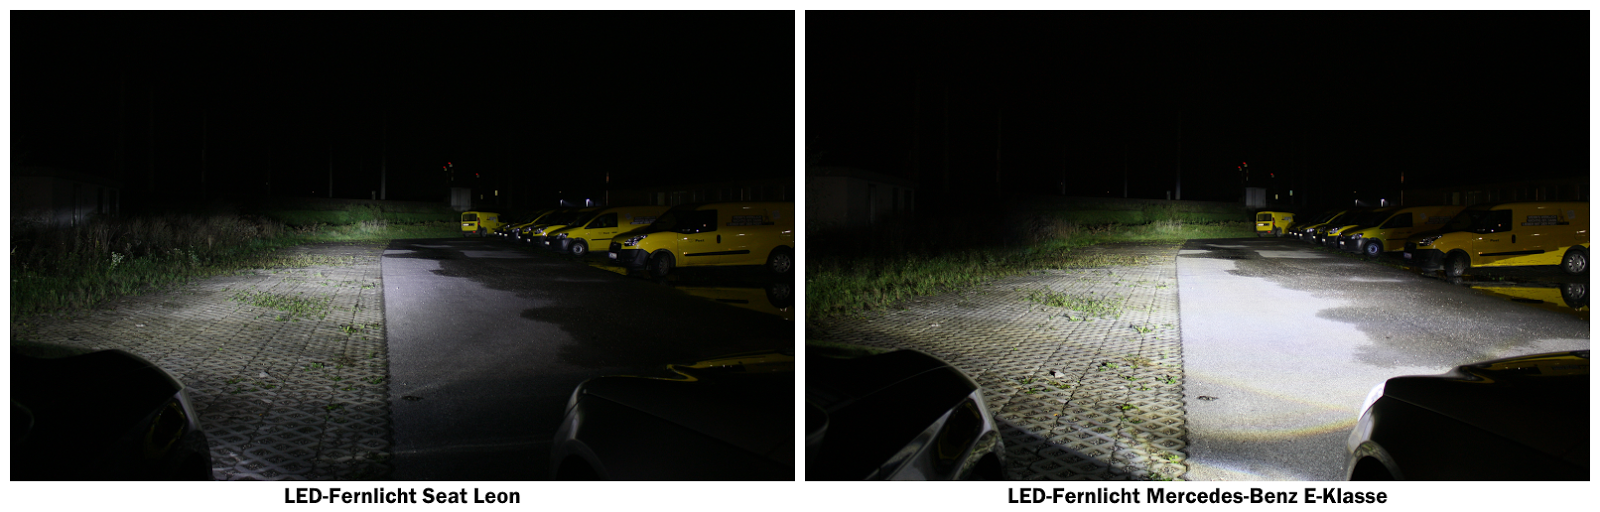 LED-Fernlicht Seat Leon & Mercedes-Benz E-Klasse | Photo © Raphael Gürth/autofilou.at